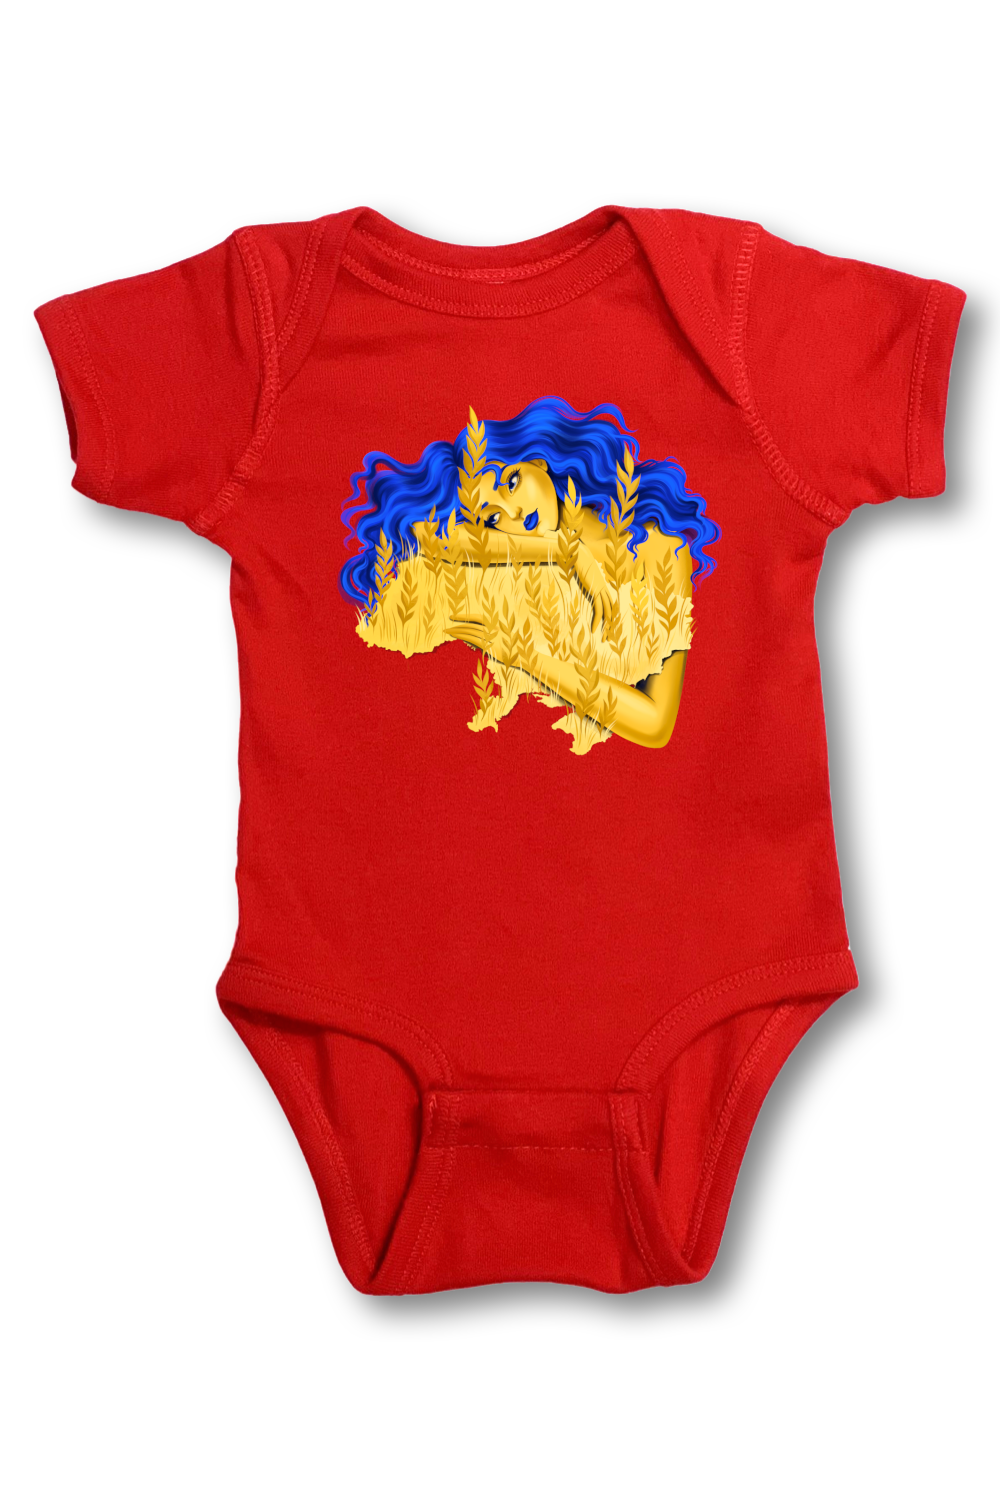 Infant onesie bodysuit "Berehynia"